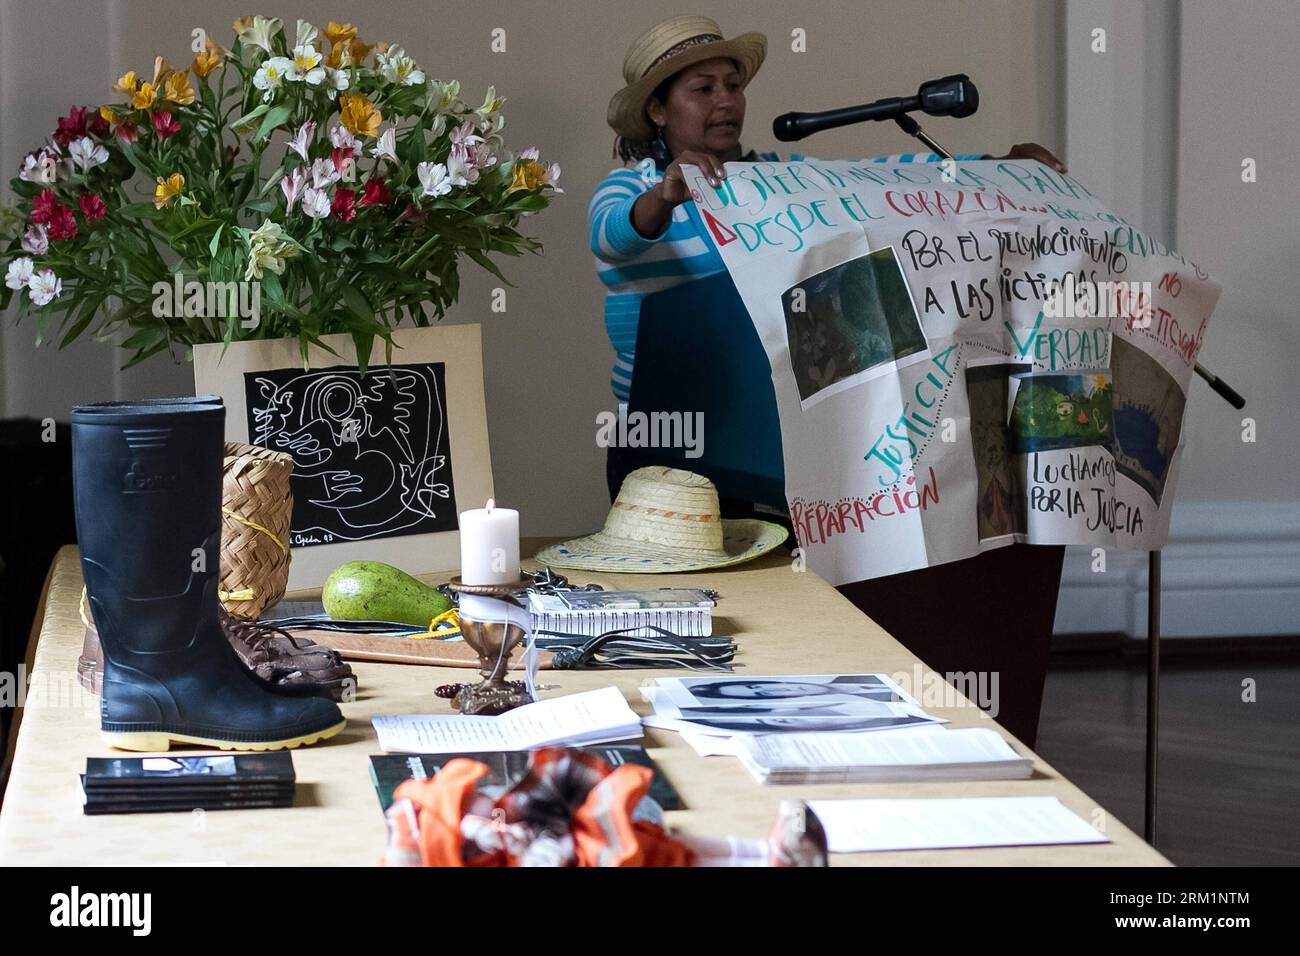 Bildnummer: 59610616 Datum: 06.05.2013 Copyright: imago/Xinhua Eine Bauernfrau nimmt am 6. Mai 2013 an der zweiten Phase der regionalen Tische für den Frieden auf dem Kongress der Republik in Bogota, der Hauptstadt Kolumbiens, Teil. Während der Eröffnungssitzung, die von Kongresskommissionen für den Frieden einberufen und von den Vereinten Nationen (UN) unterstützt wurde, nahmen bewaffnete Konfliktopfer mit Gegenständen und Zeugenaussagen Teil, die während der Dialoge zwischen der kolumbianischen Regierung und den kolumbianischen Revolutionären Streitkräften (FARC, für sein Akronym auf spanisch) in Havanna, der Hauptstadt Kubas, aufgedeckt werden sollten. (Xinhua/Jhon Paz) (rh) (Ah) KOLUMBIEN-MOOR Stockfoto